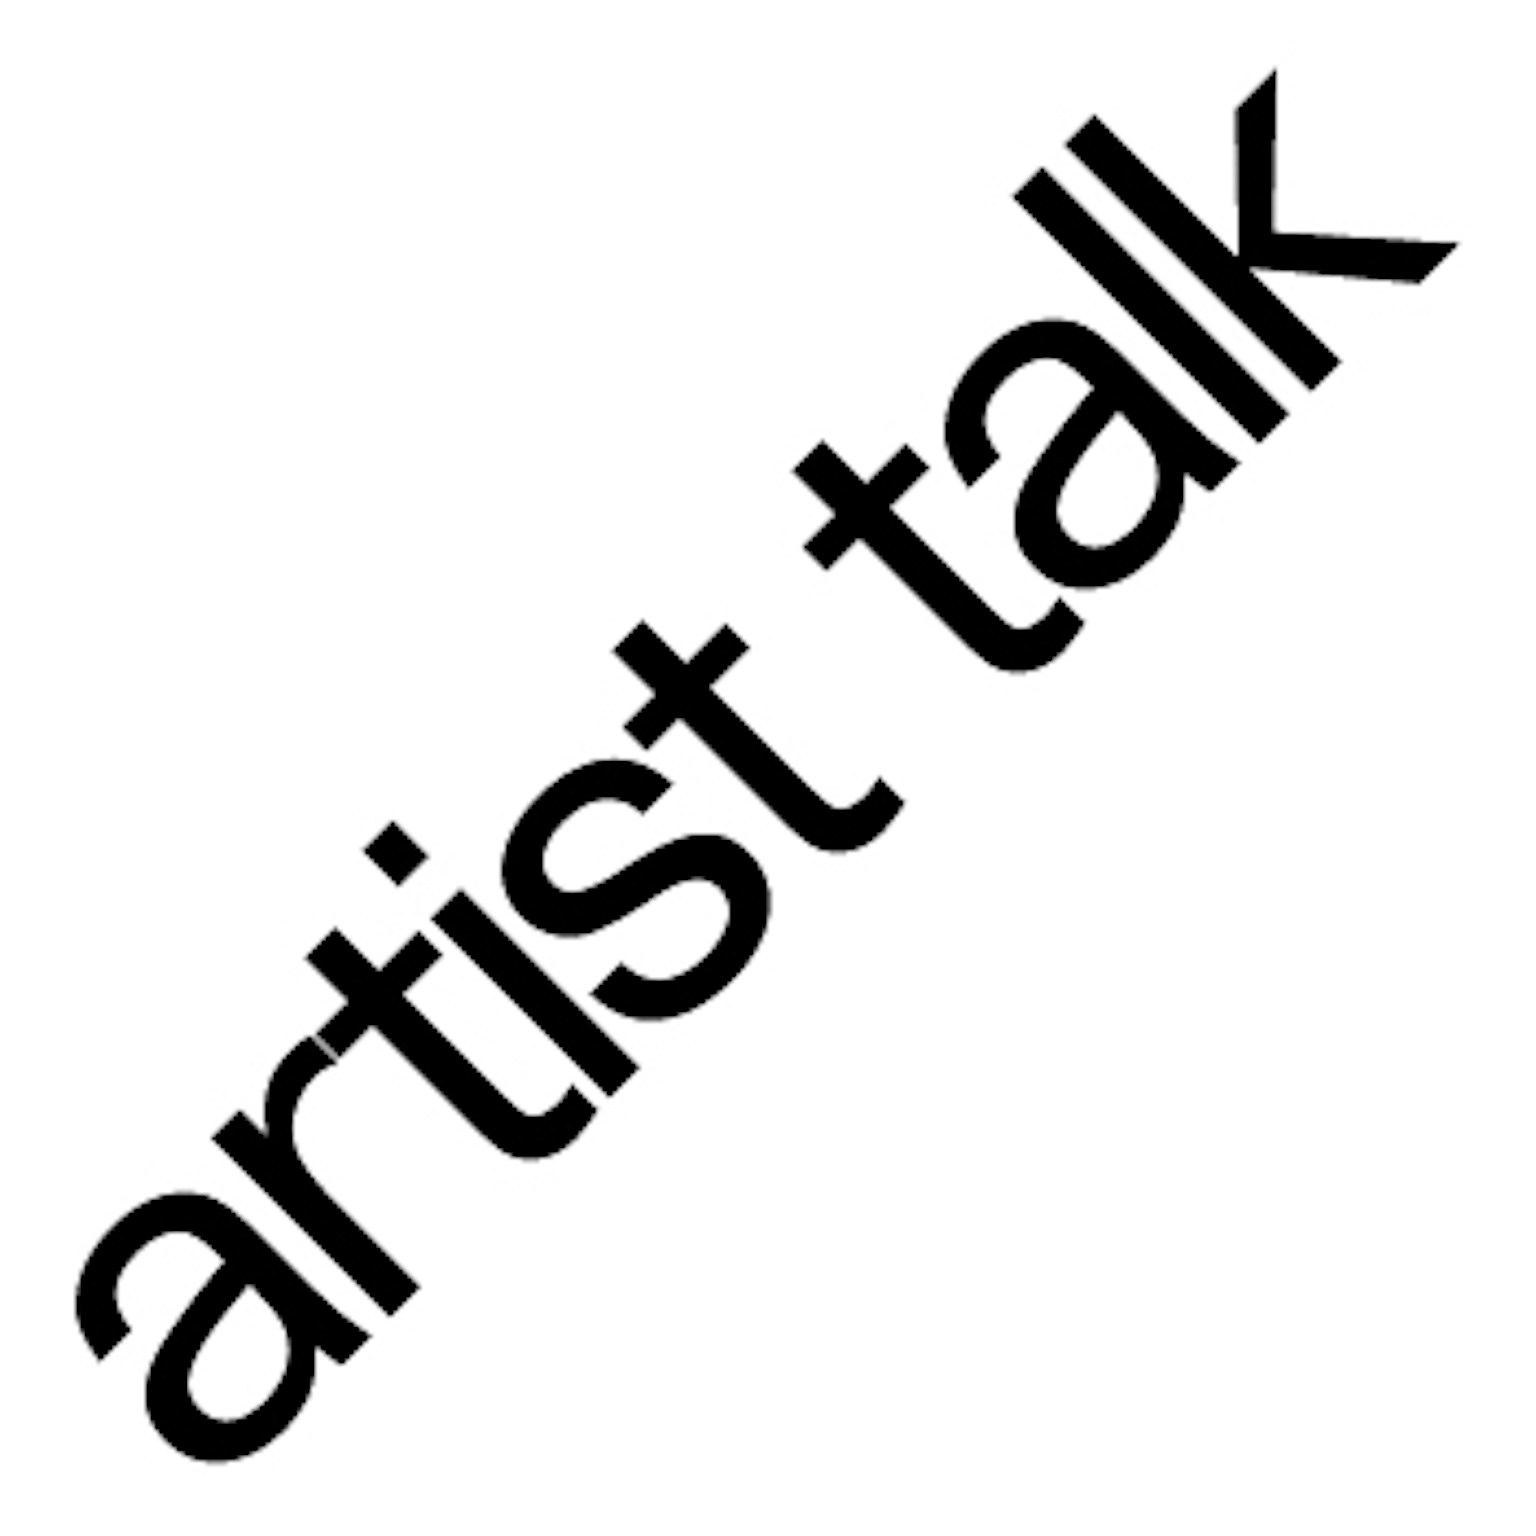 Artist talk